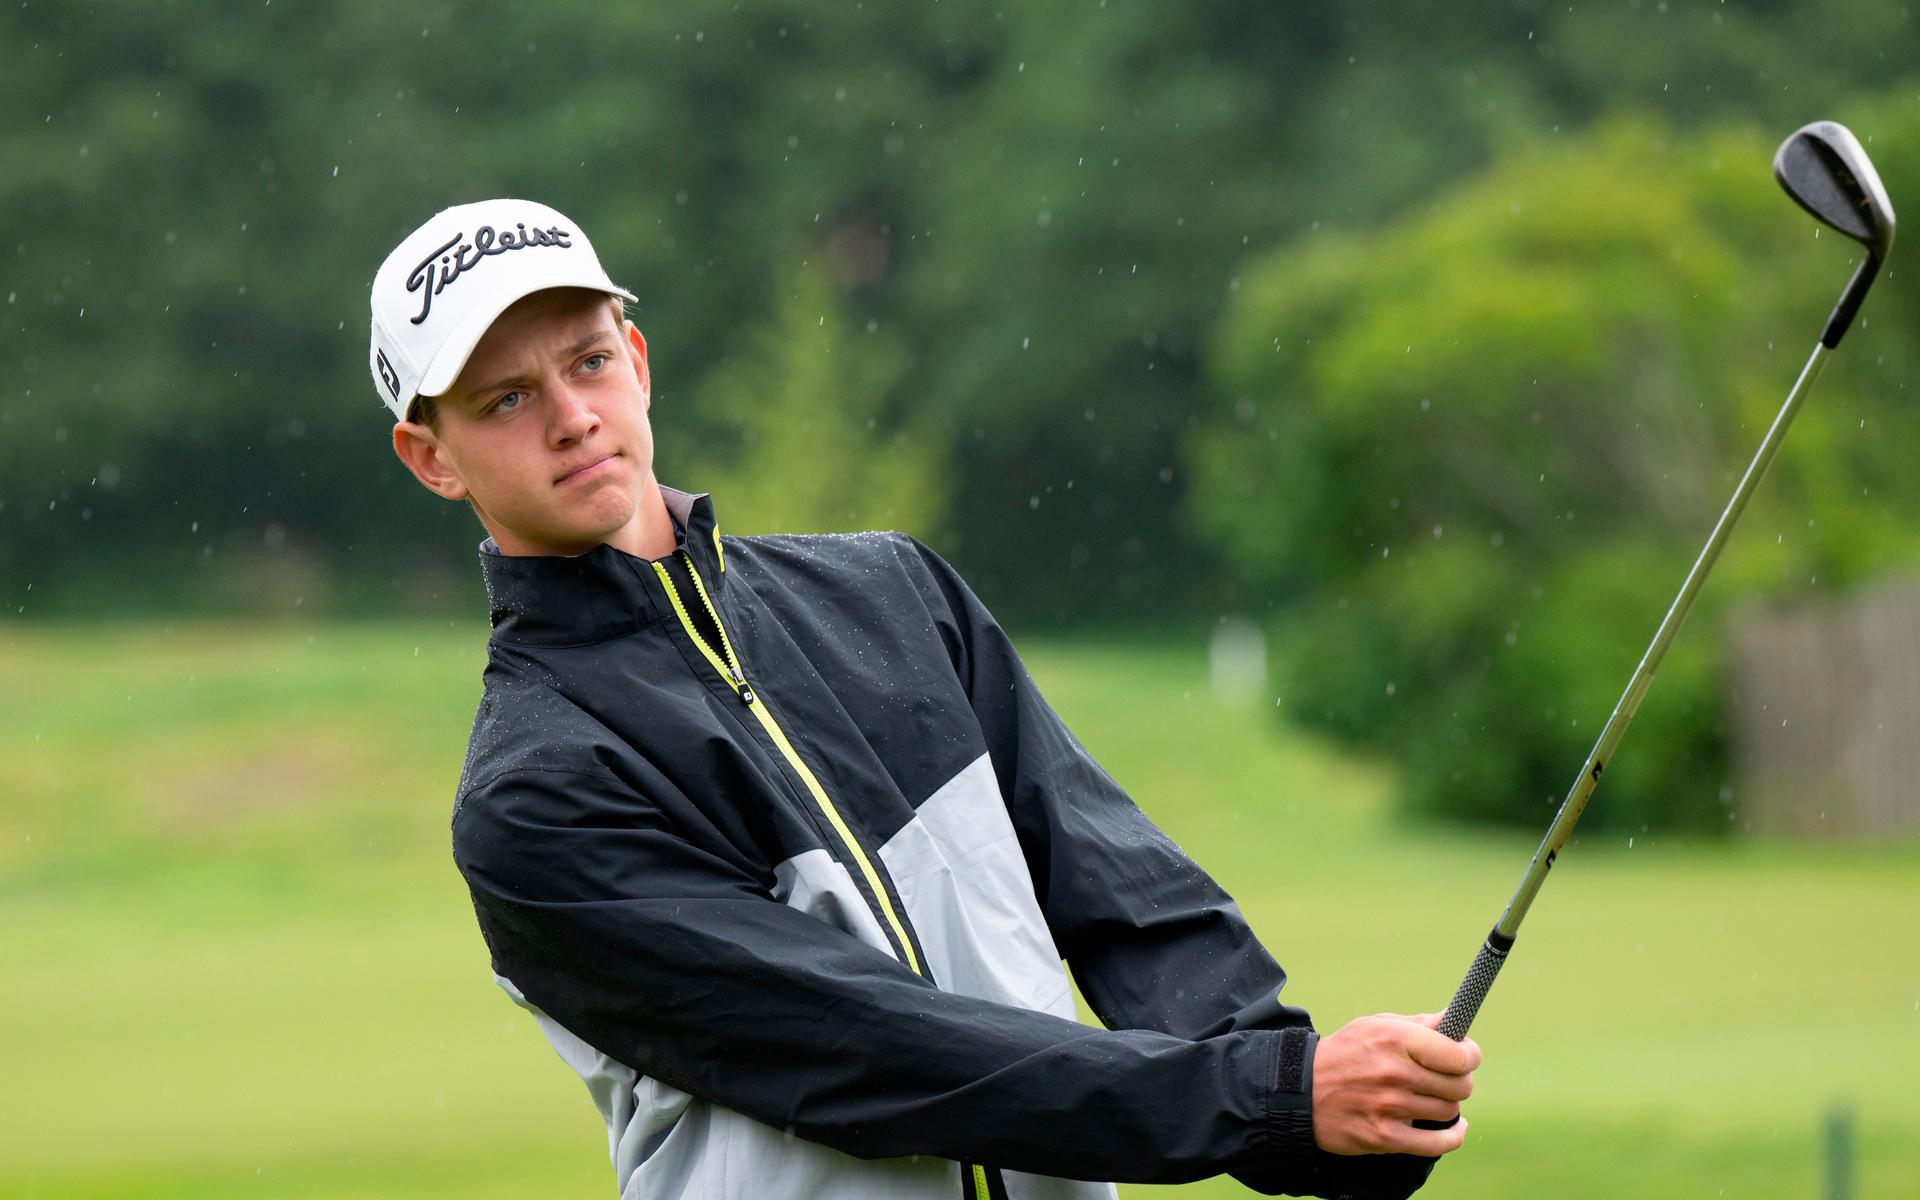 För Neo Berg, 16, är det inget annat än golf som gäller. Trots sin unga ålder har han redan fått möta världseliten i Europatouren.